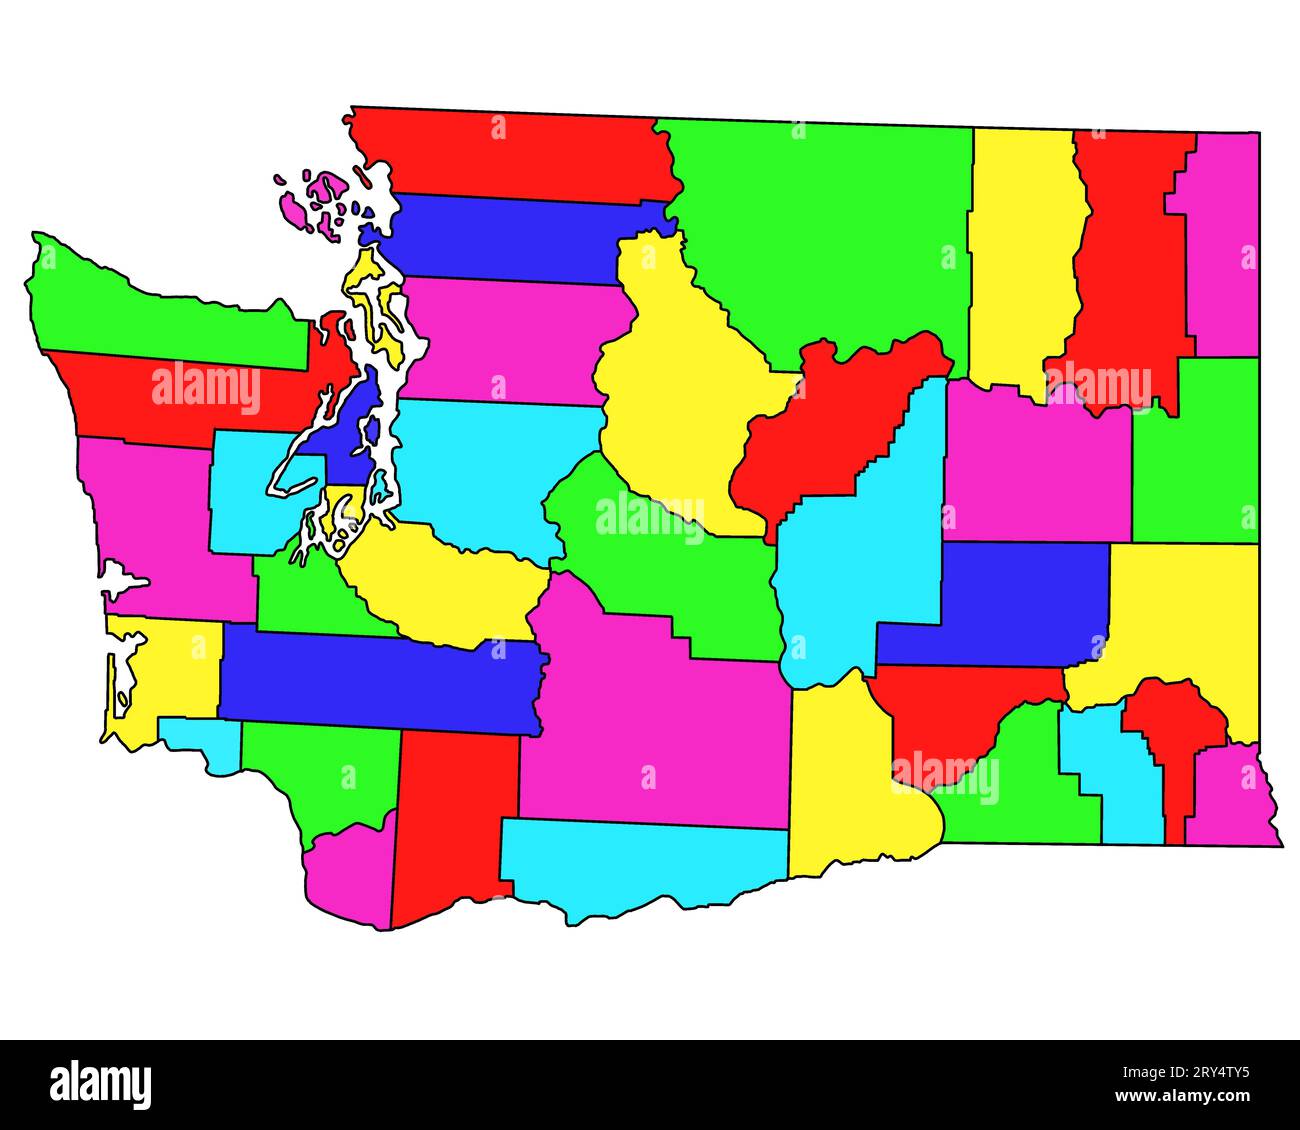 Carte administrative de Washington DC. Carte des comtés de Washington dc avec différentes couleurs, carte vierge, carte vide de Washington. Banque D'Images